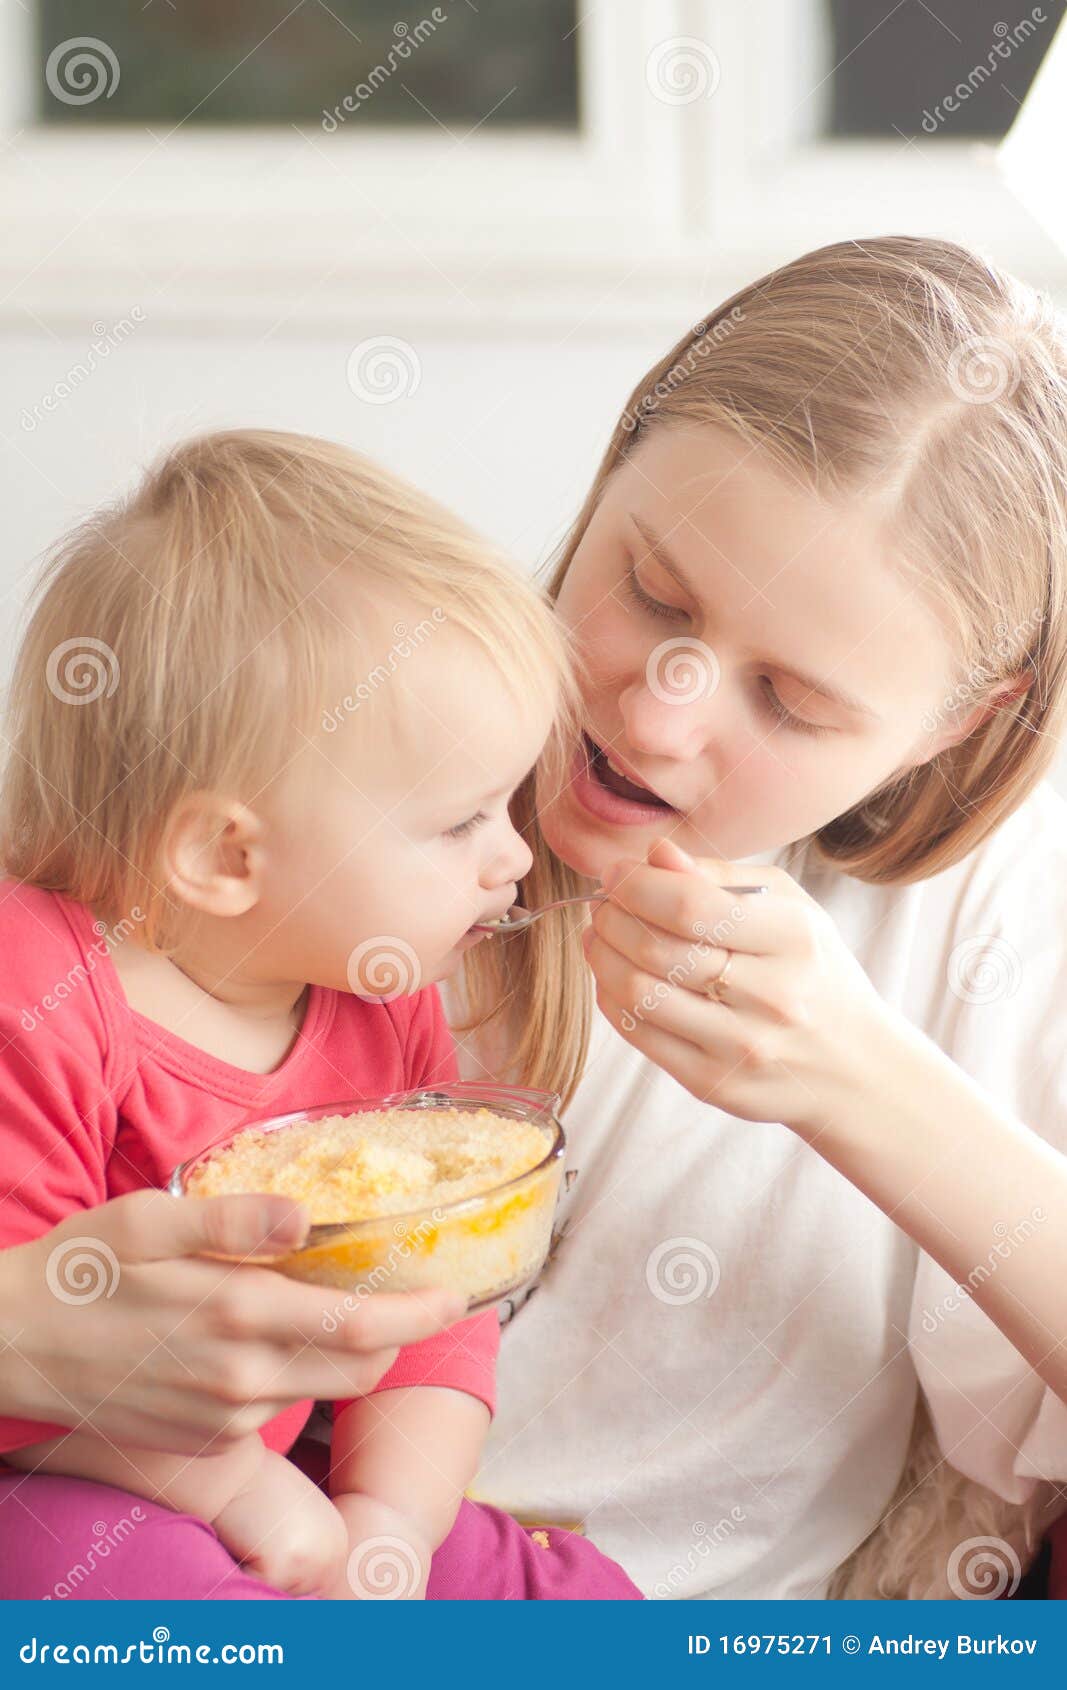 Полизать маленькой девочке. Мама кормит дочь. Мама кормит малыша кашей. Молодая мама кормит дочь. Картинка мама кормит ребенка кашей.